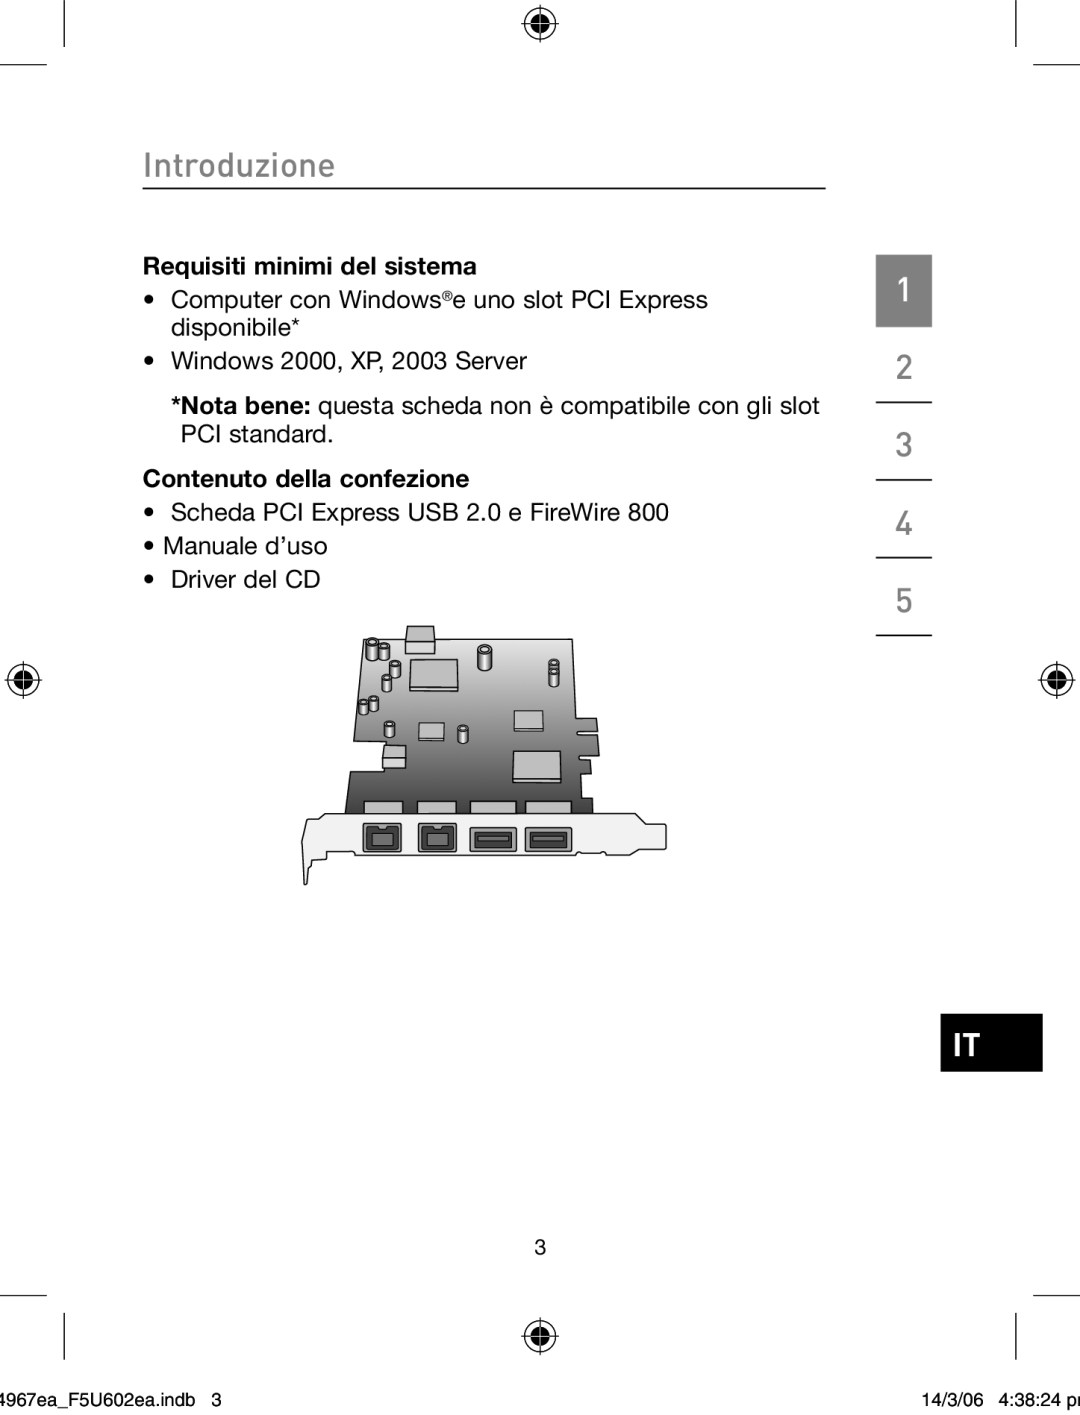 Belkin F5U602EA user manual Requisiti minimi del sistema, Contenuto della confezione, Introduzione, 4967eaF5U602ea.indb 